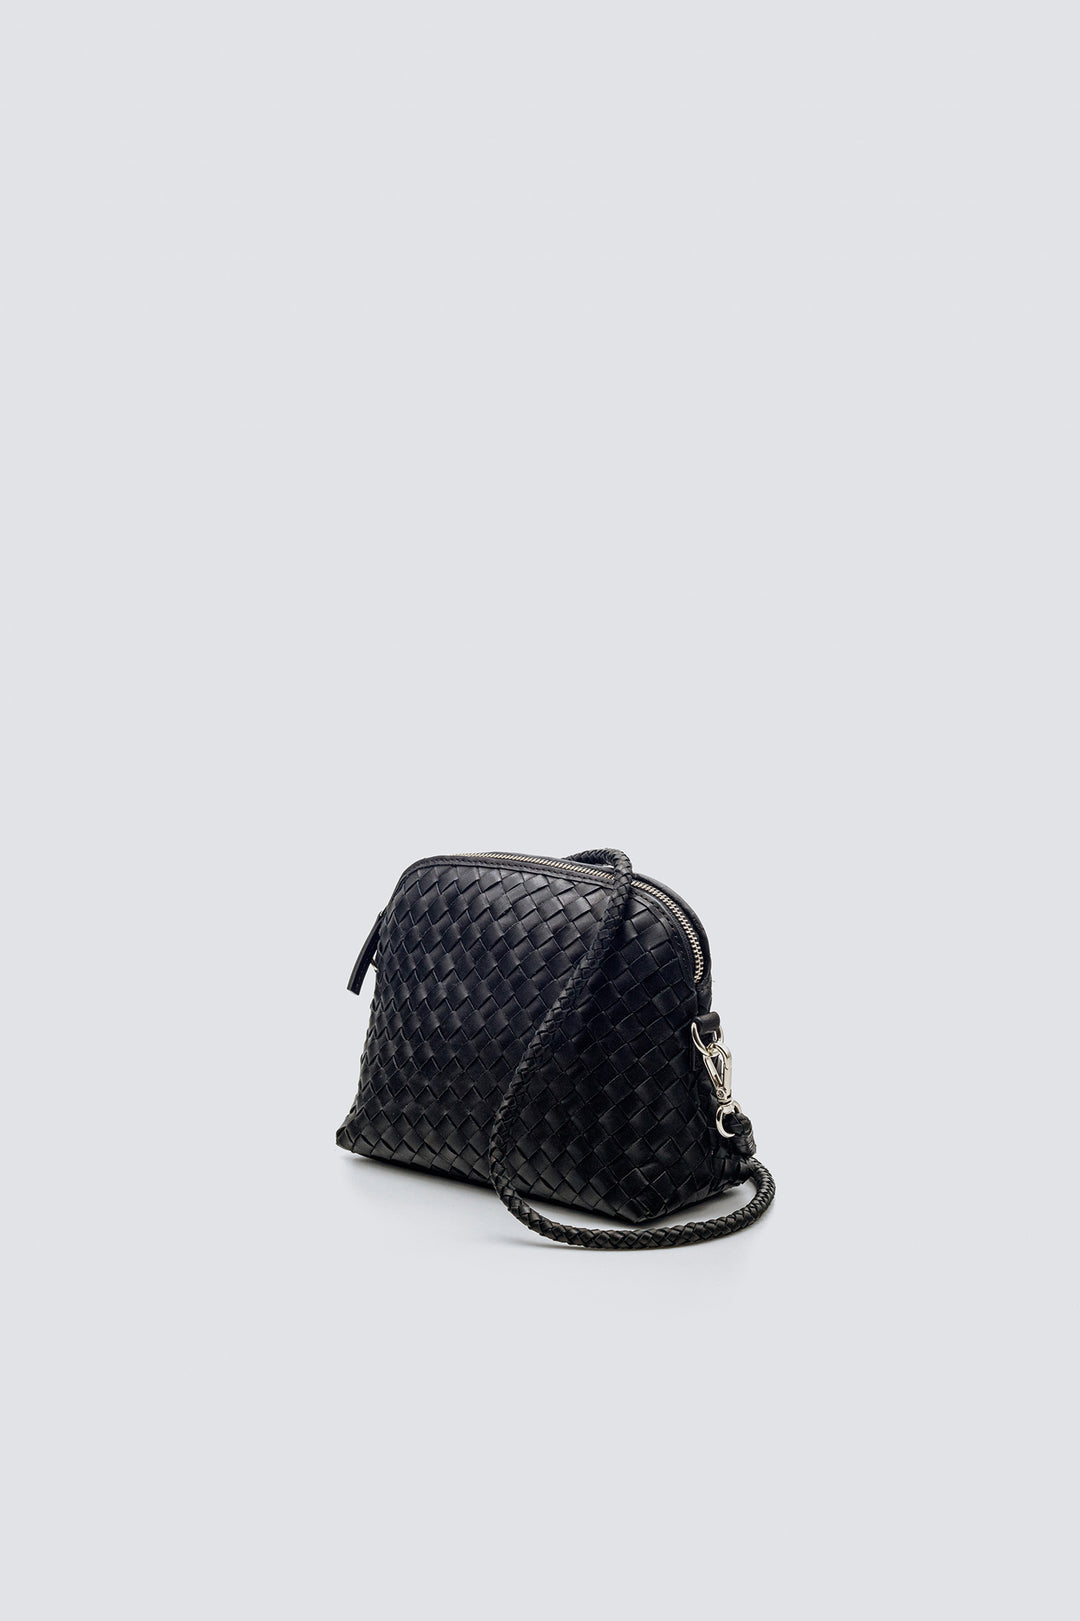 Dragon Diffusion woven leather bag handmade - Fellini Pochette Black